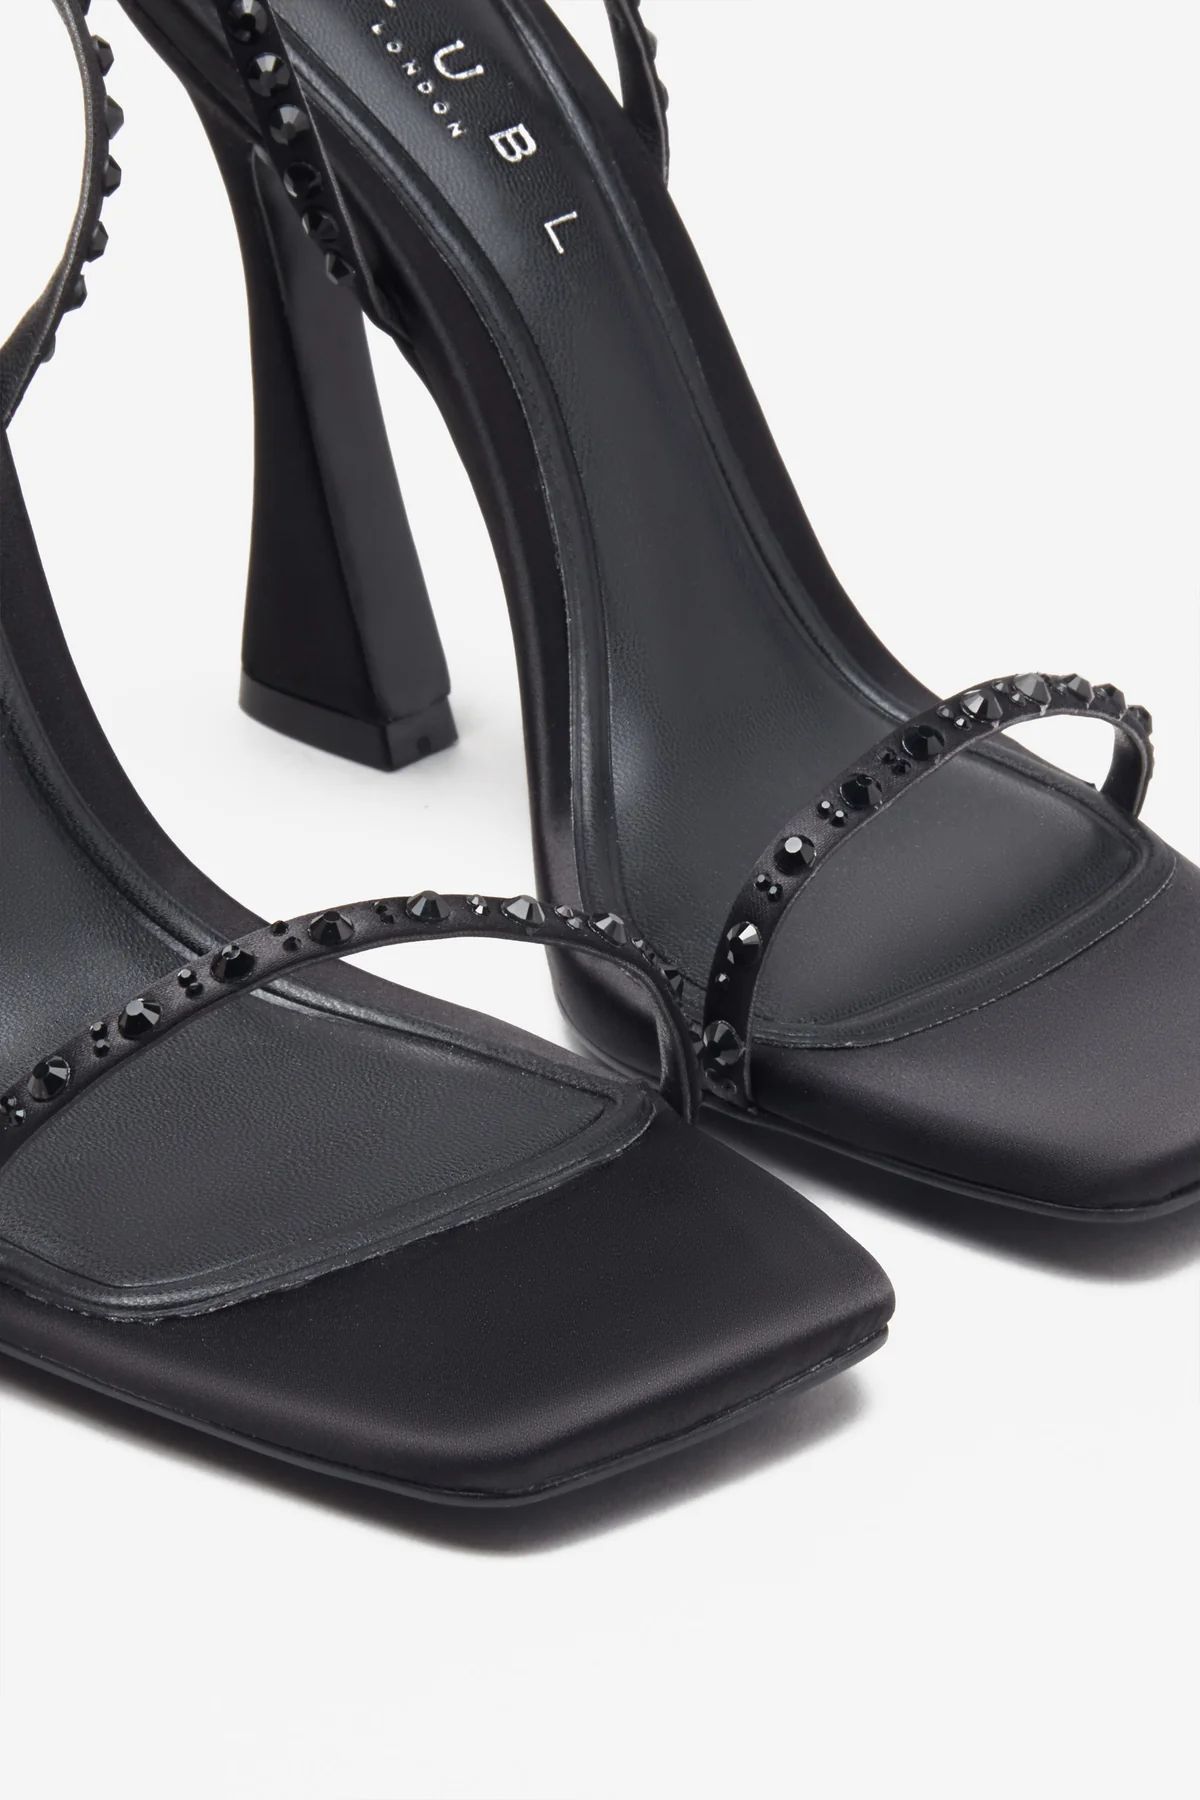 Nostalgia | Black Satin Heeled Sandals With Diamante Straps | Club L London